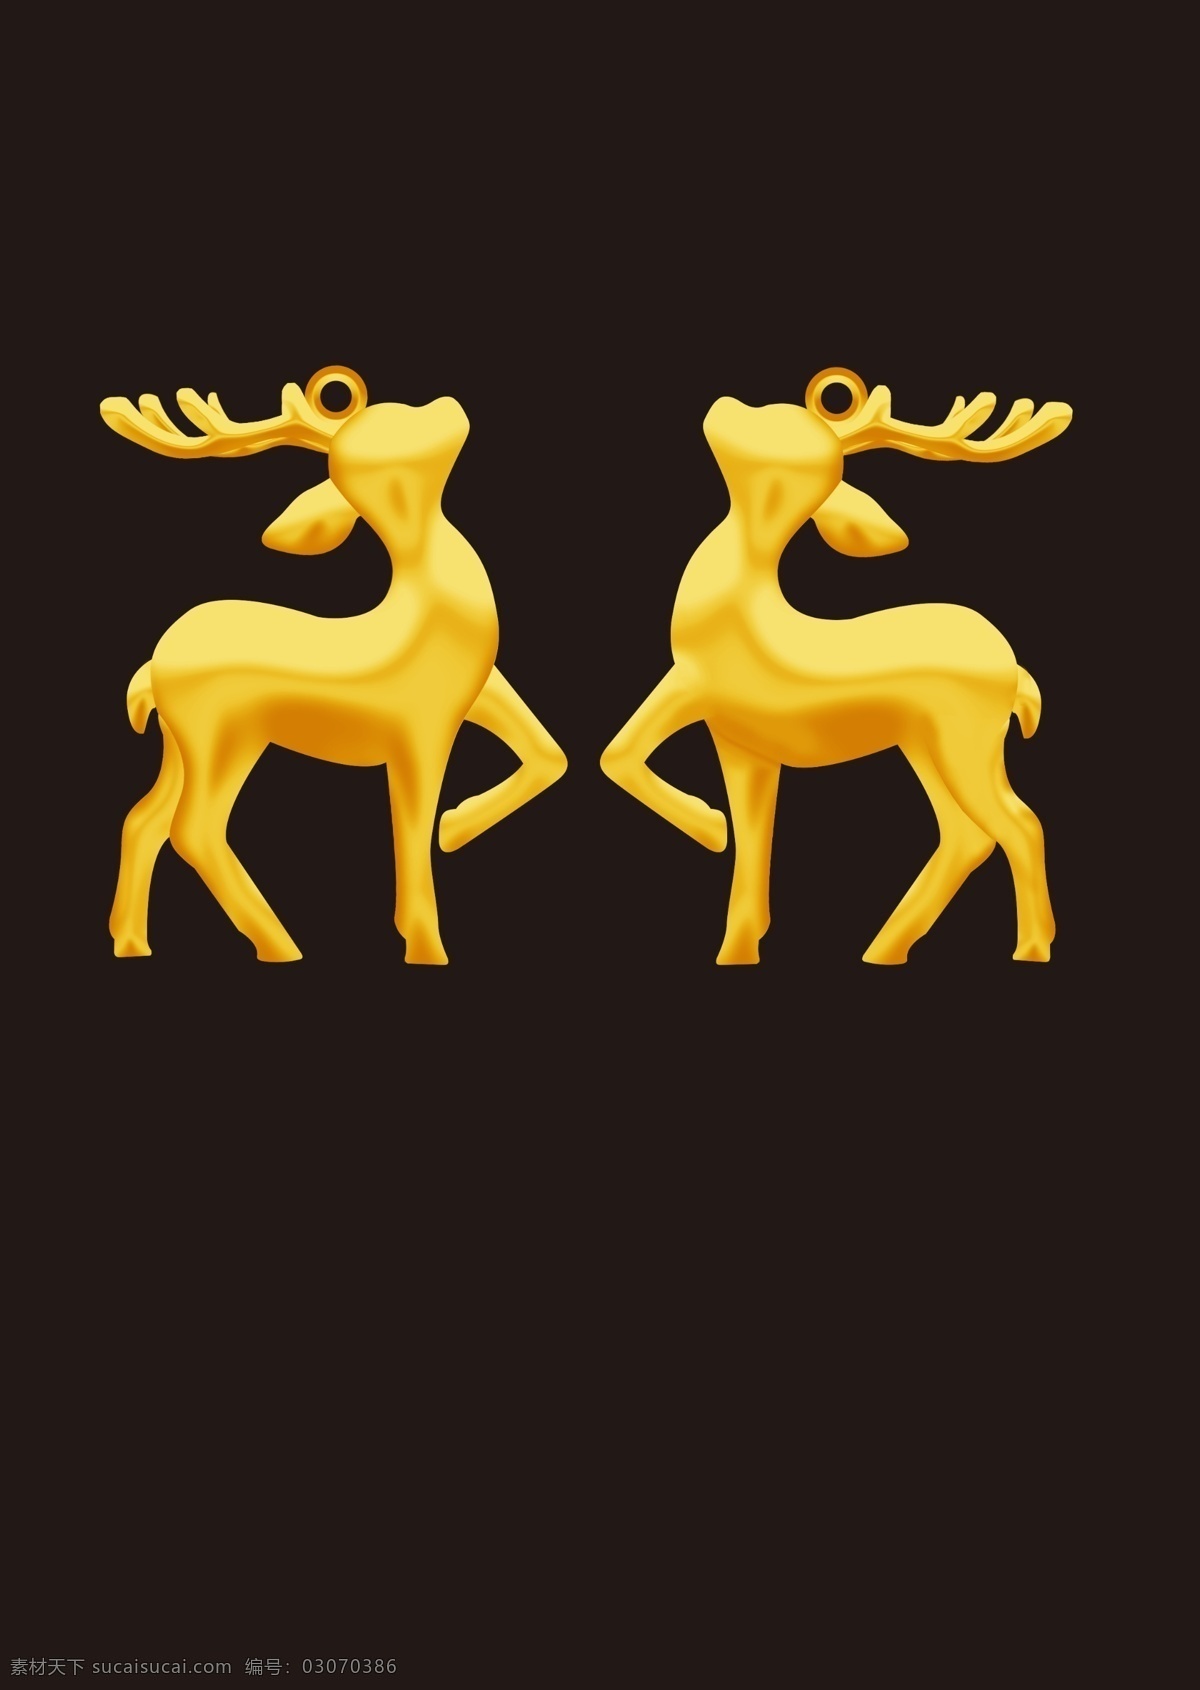 麋鹿图片 鹿 麋鹿 金 首饰 金饰 分层